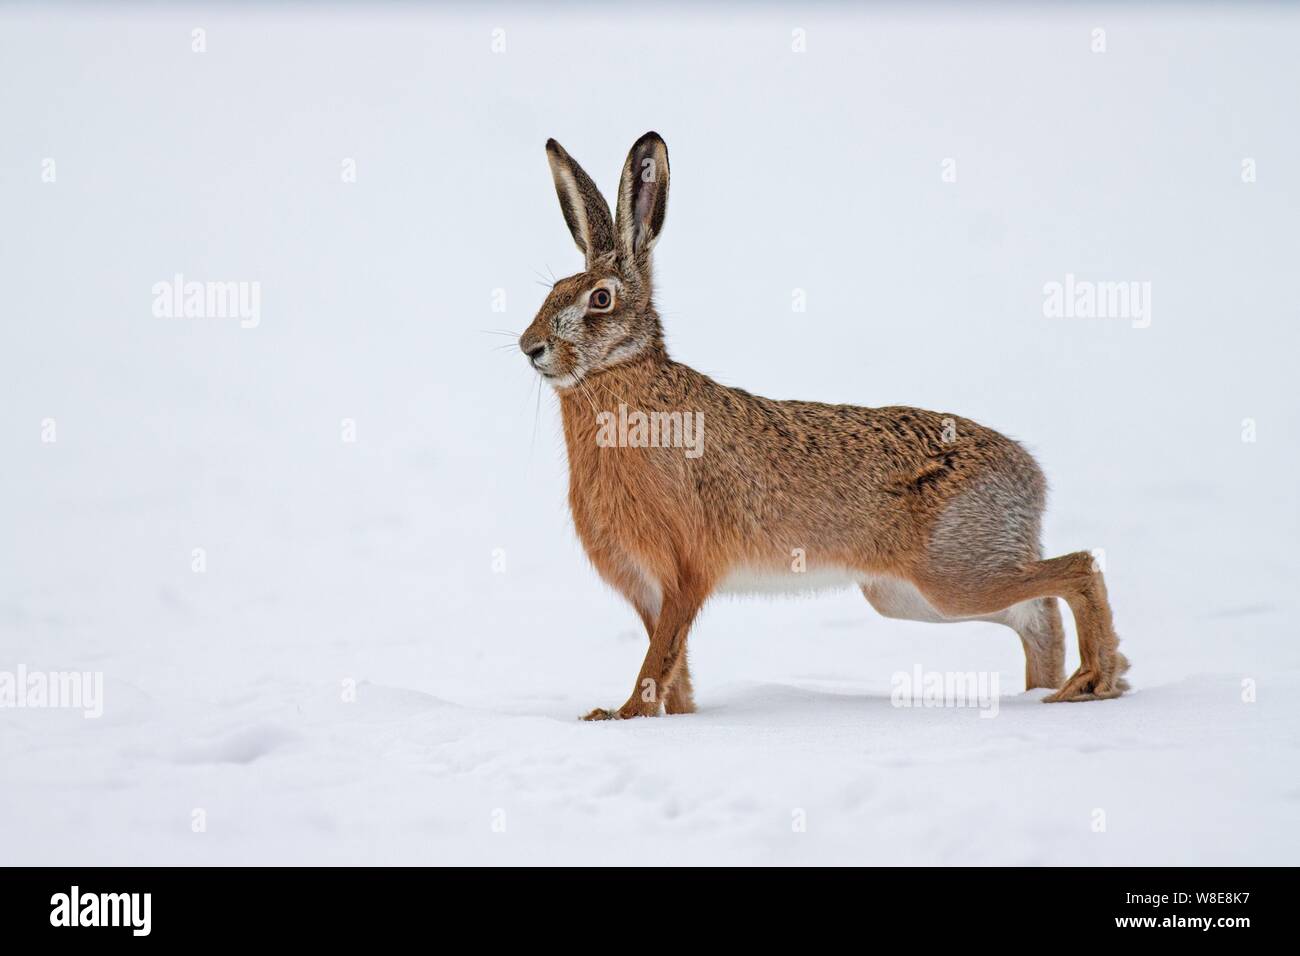 European brown hare, Lepus europaeus, en hiver avec un fond blanc. Vue latérale d'un animal sauvage sur terrain couvert de neige. Banque D'Images